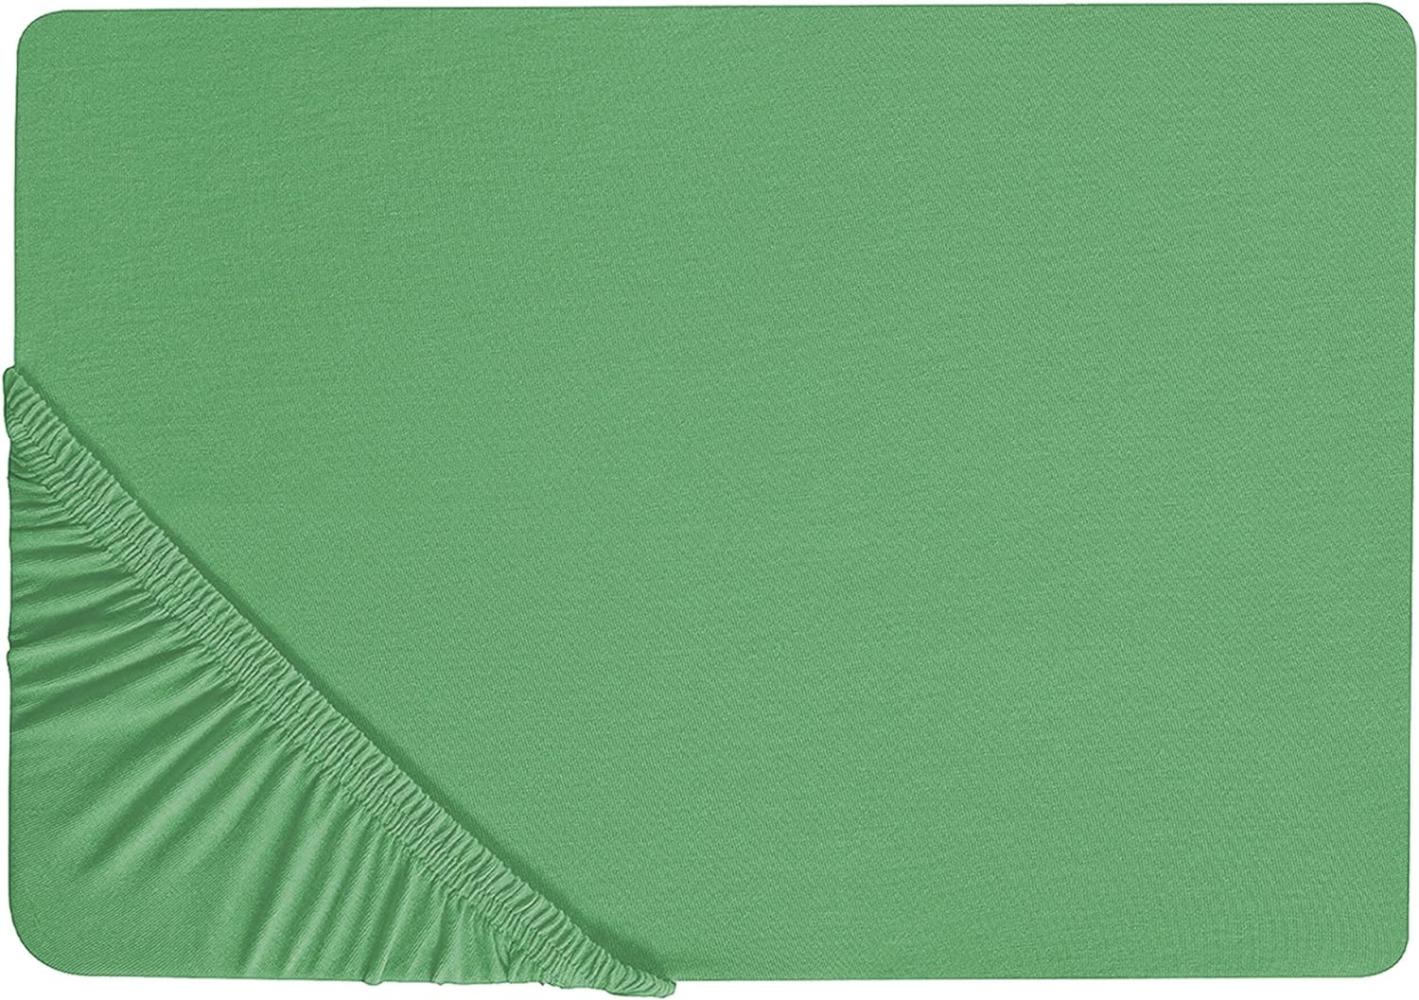 Spannbettlaken Baumwolle grün 90 x 200 cm JANBU Bild 1